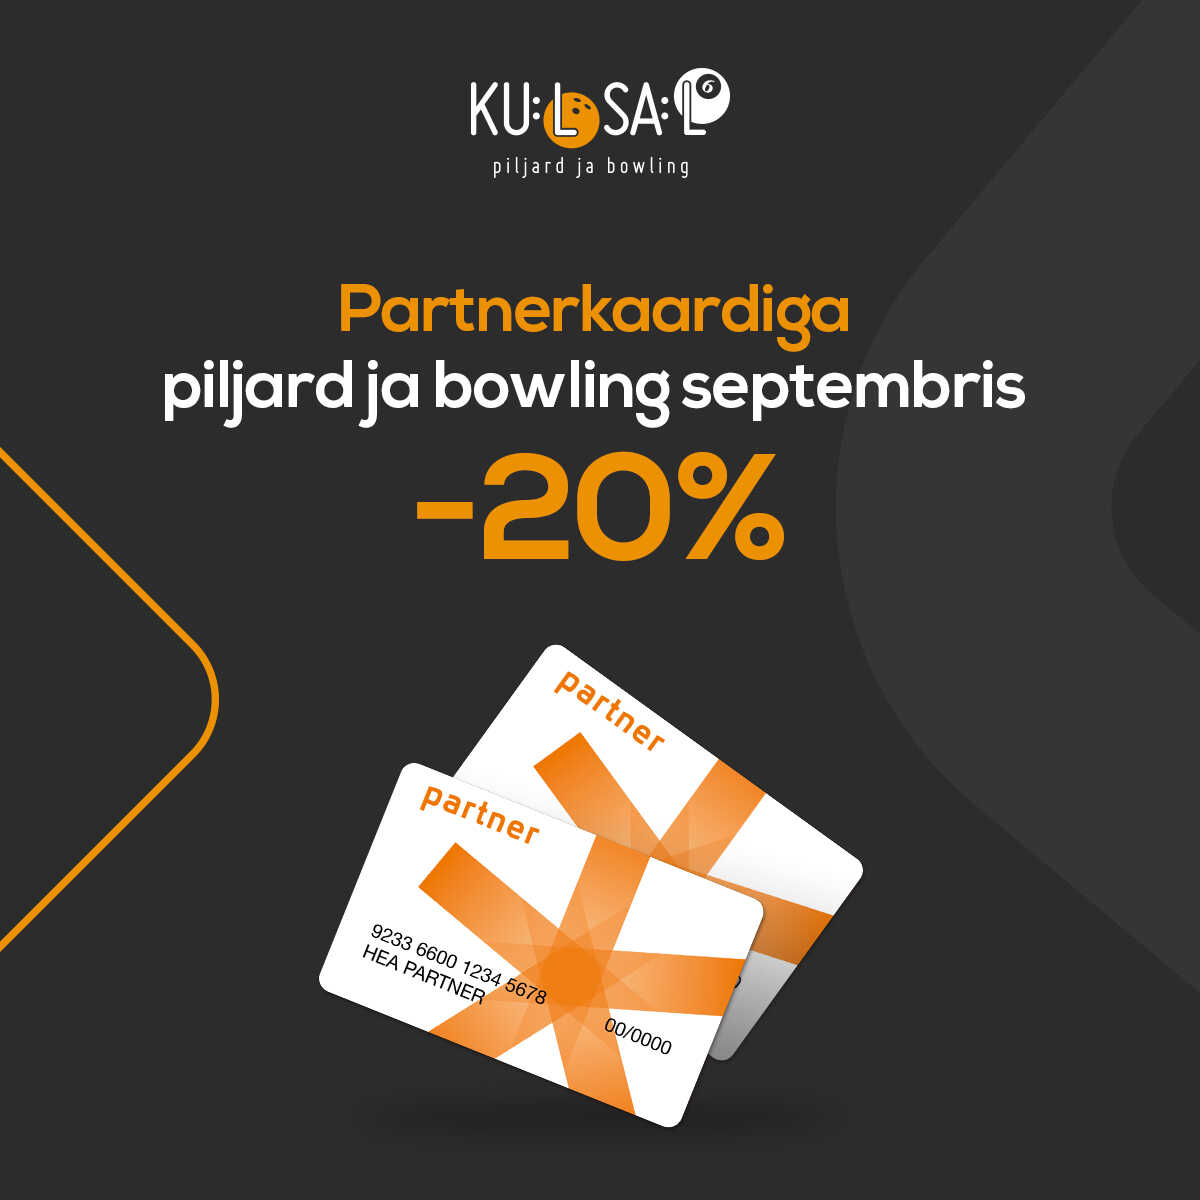 Septembris Kuulsaalis bowling ja piljard Partnerkaardiga 20% soodsam